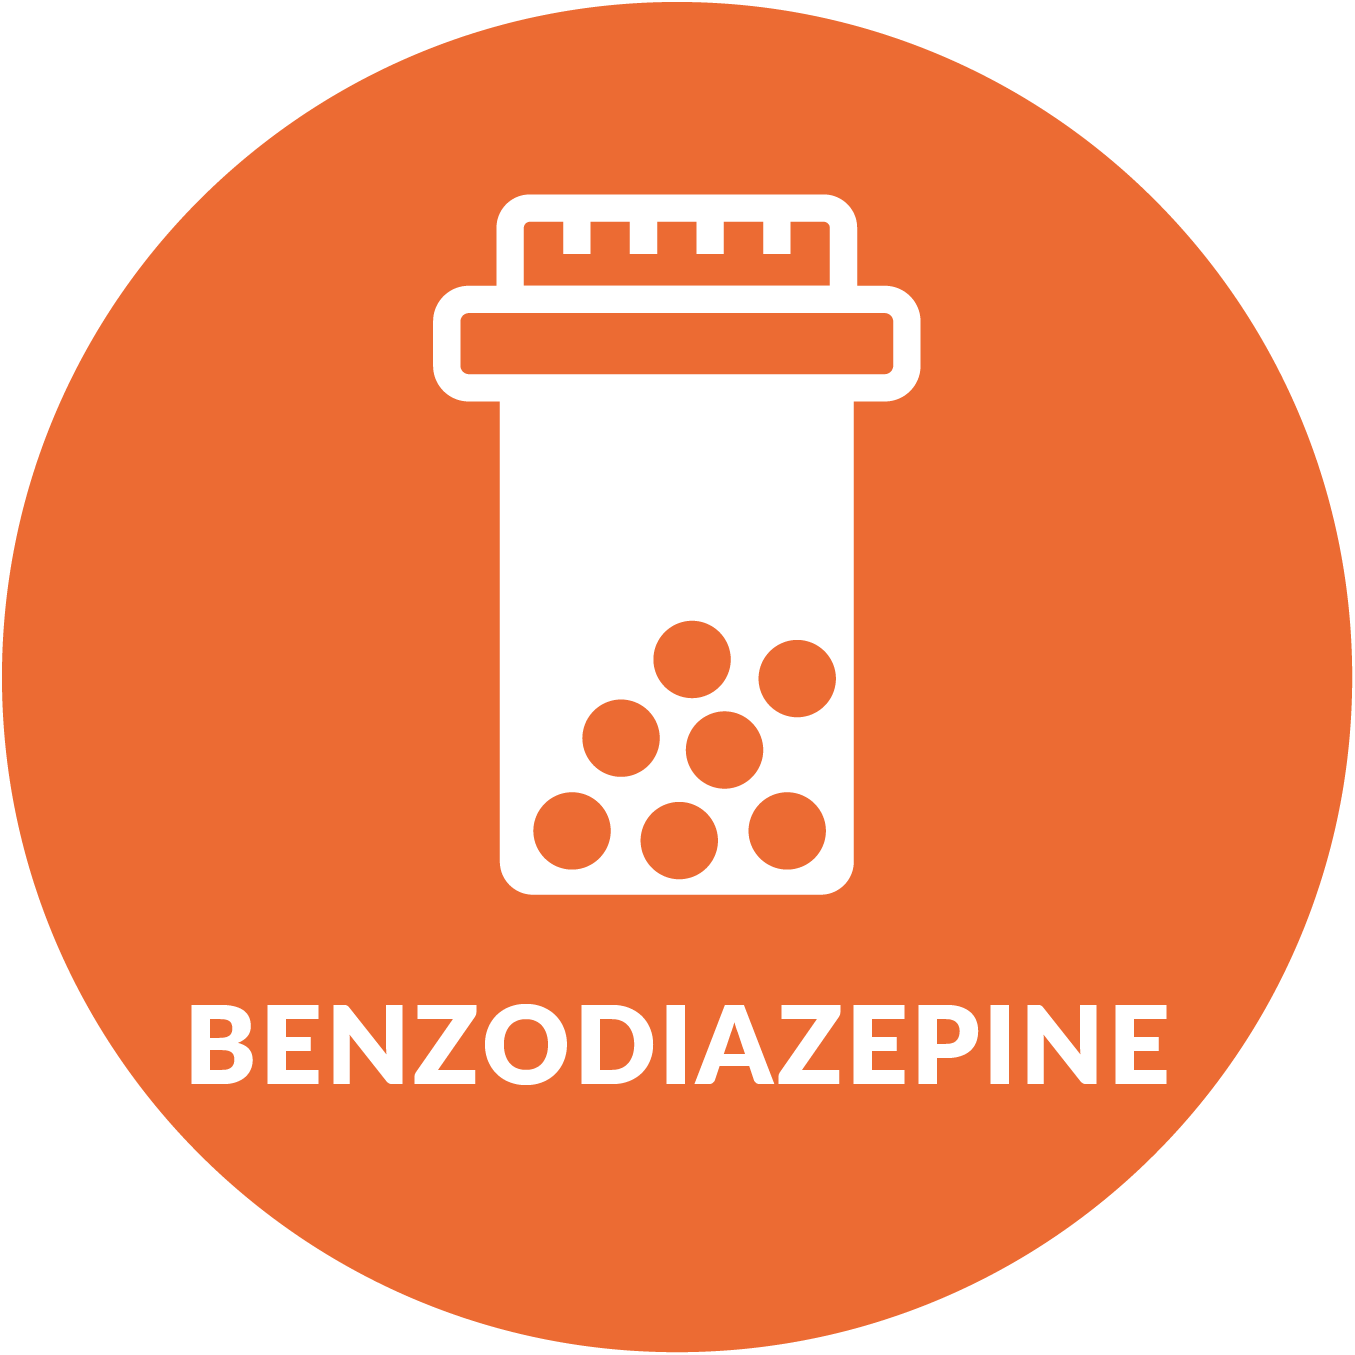 Benzodiazipine Treatment